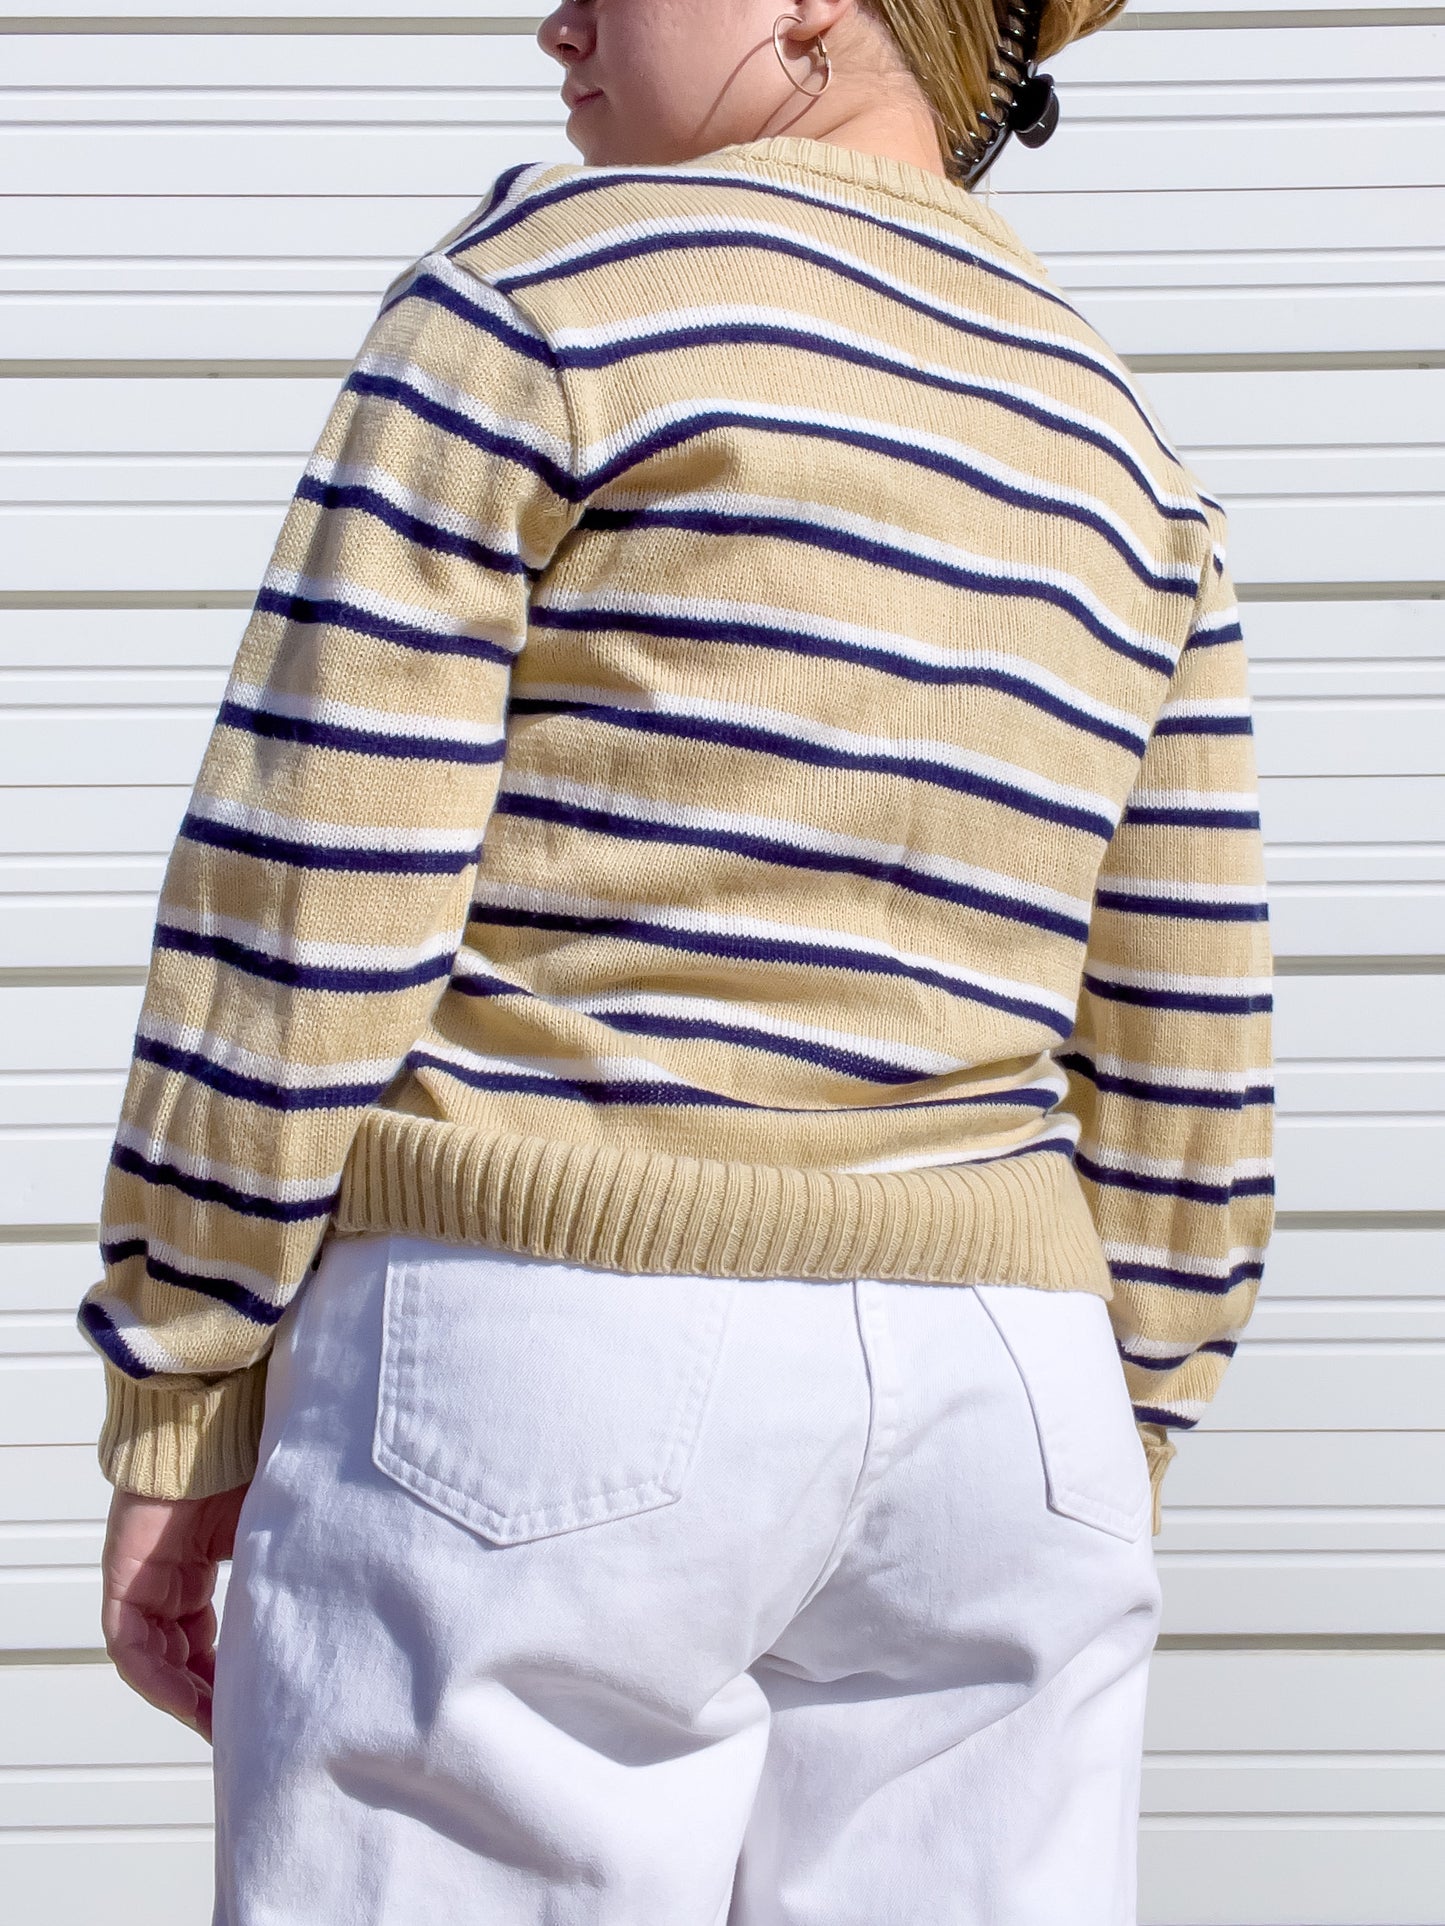 80s Tan, Navy, & White Striped Sweater (M/L)